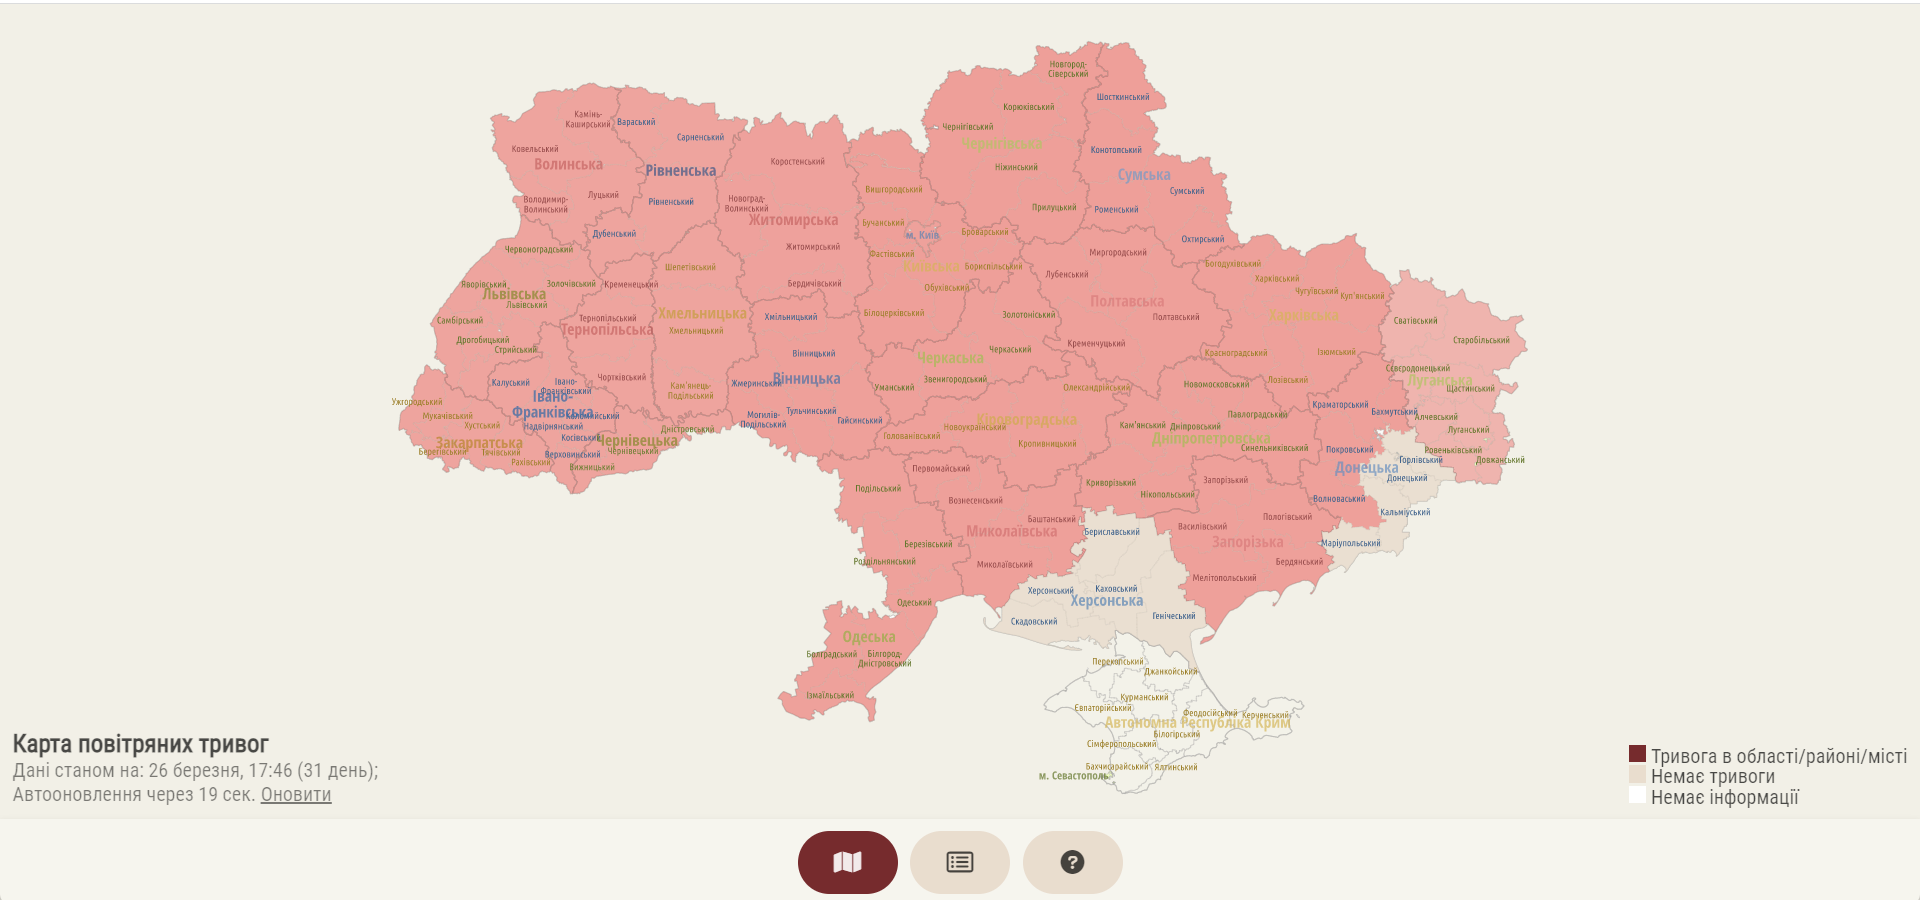 Карта повитряной тревоги в украине. Карта Украины. Карта Украины 2022. Карта воздушных тревог. Карта тревог в Украине.